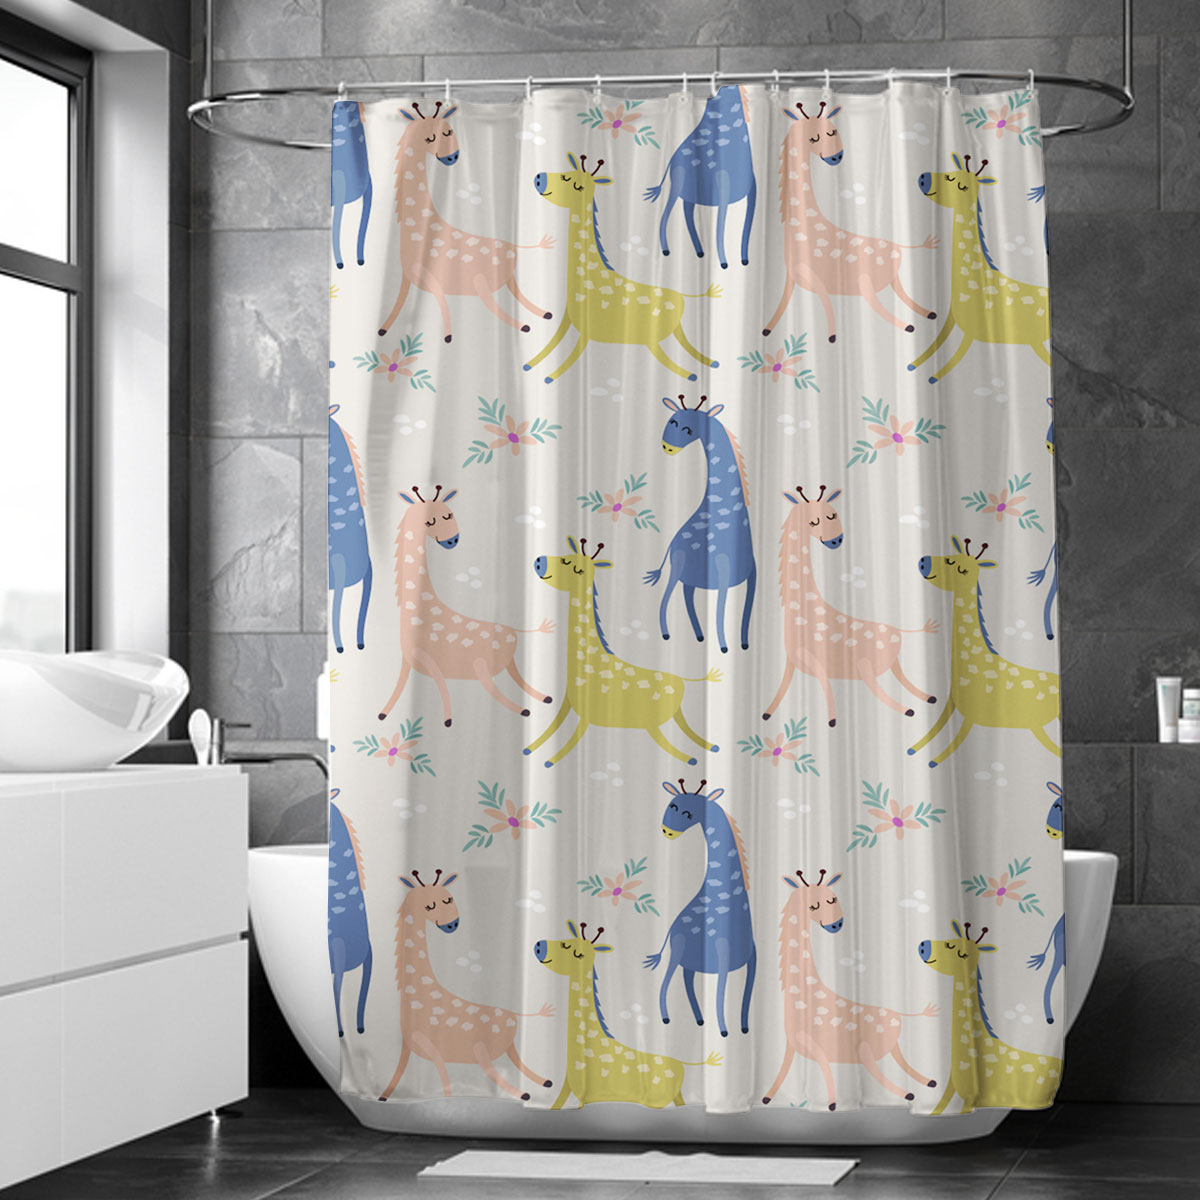 Colorful Giraffe Shower Curtain 6